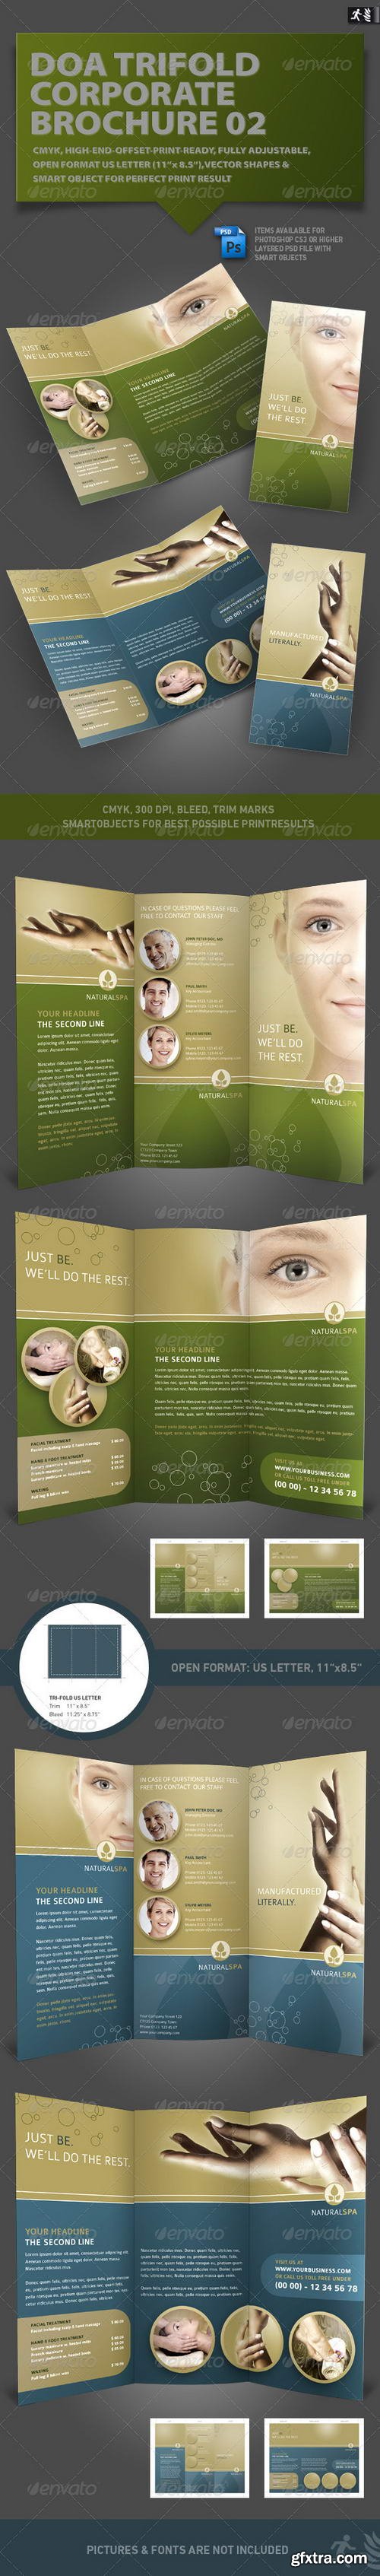 GraphicRiver - DOA Trifold Corporate Brochure 02